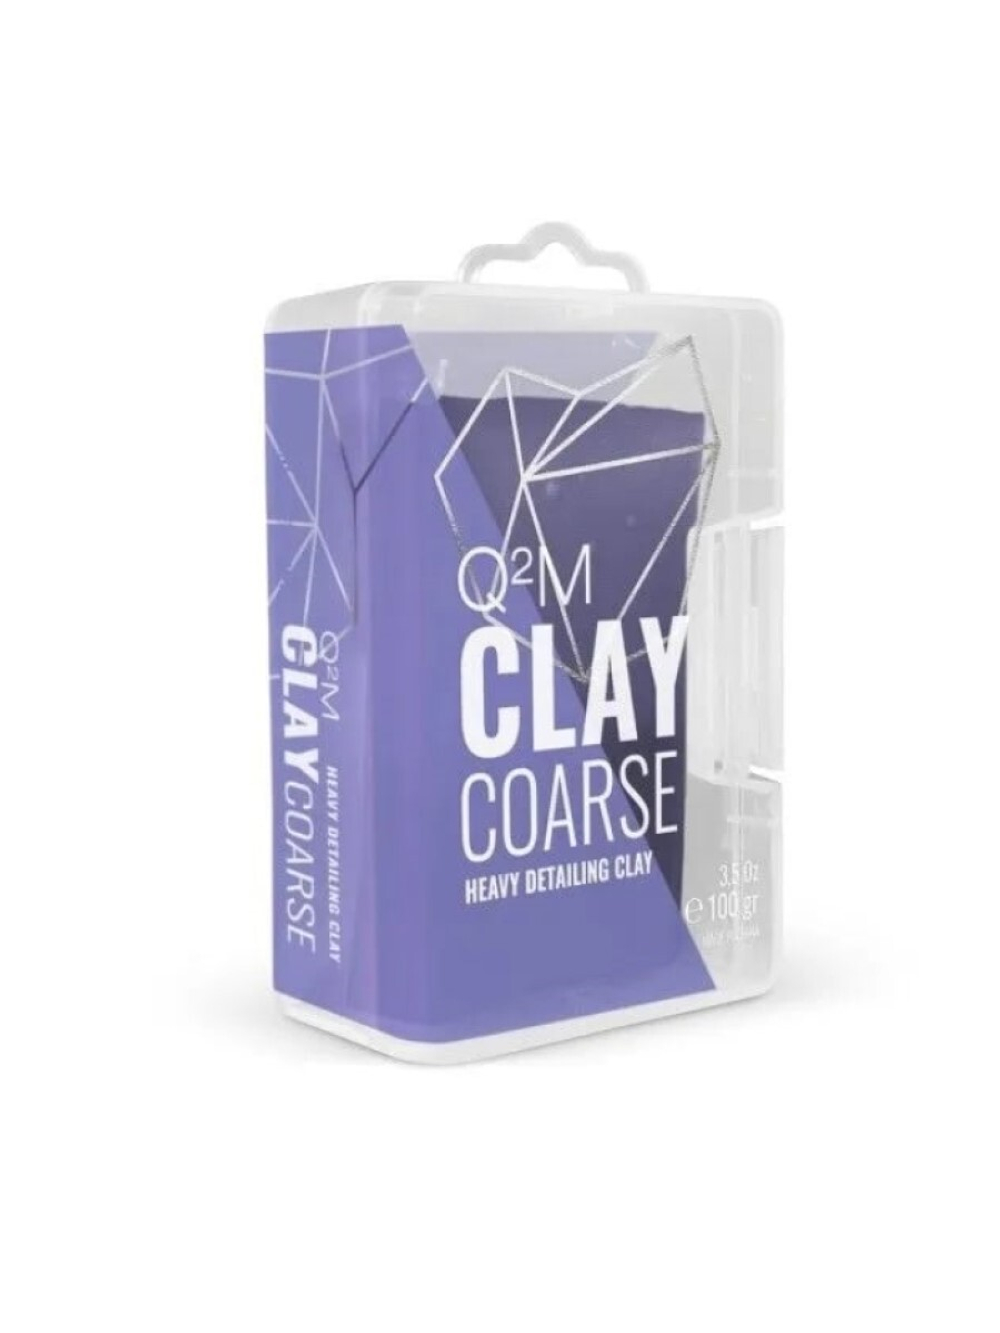 GYEON Глина высоко-абразивная высшего качества для ЛКП Q2M Clay Coarse 100г